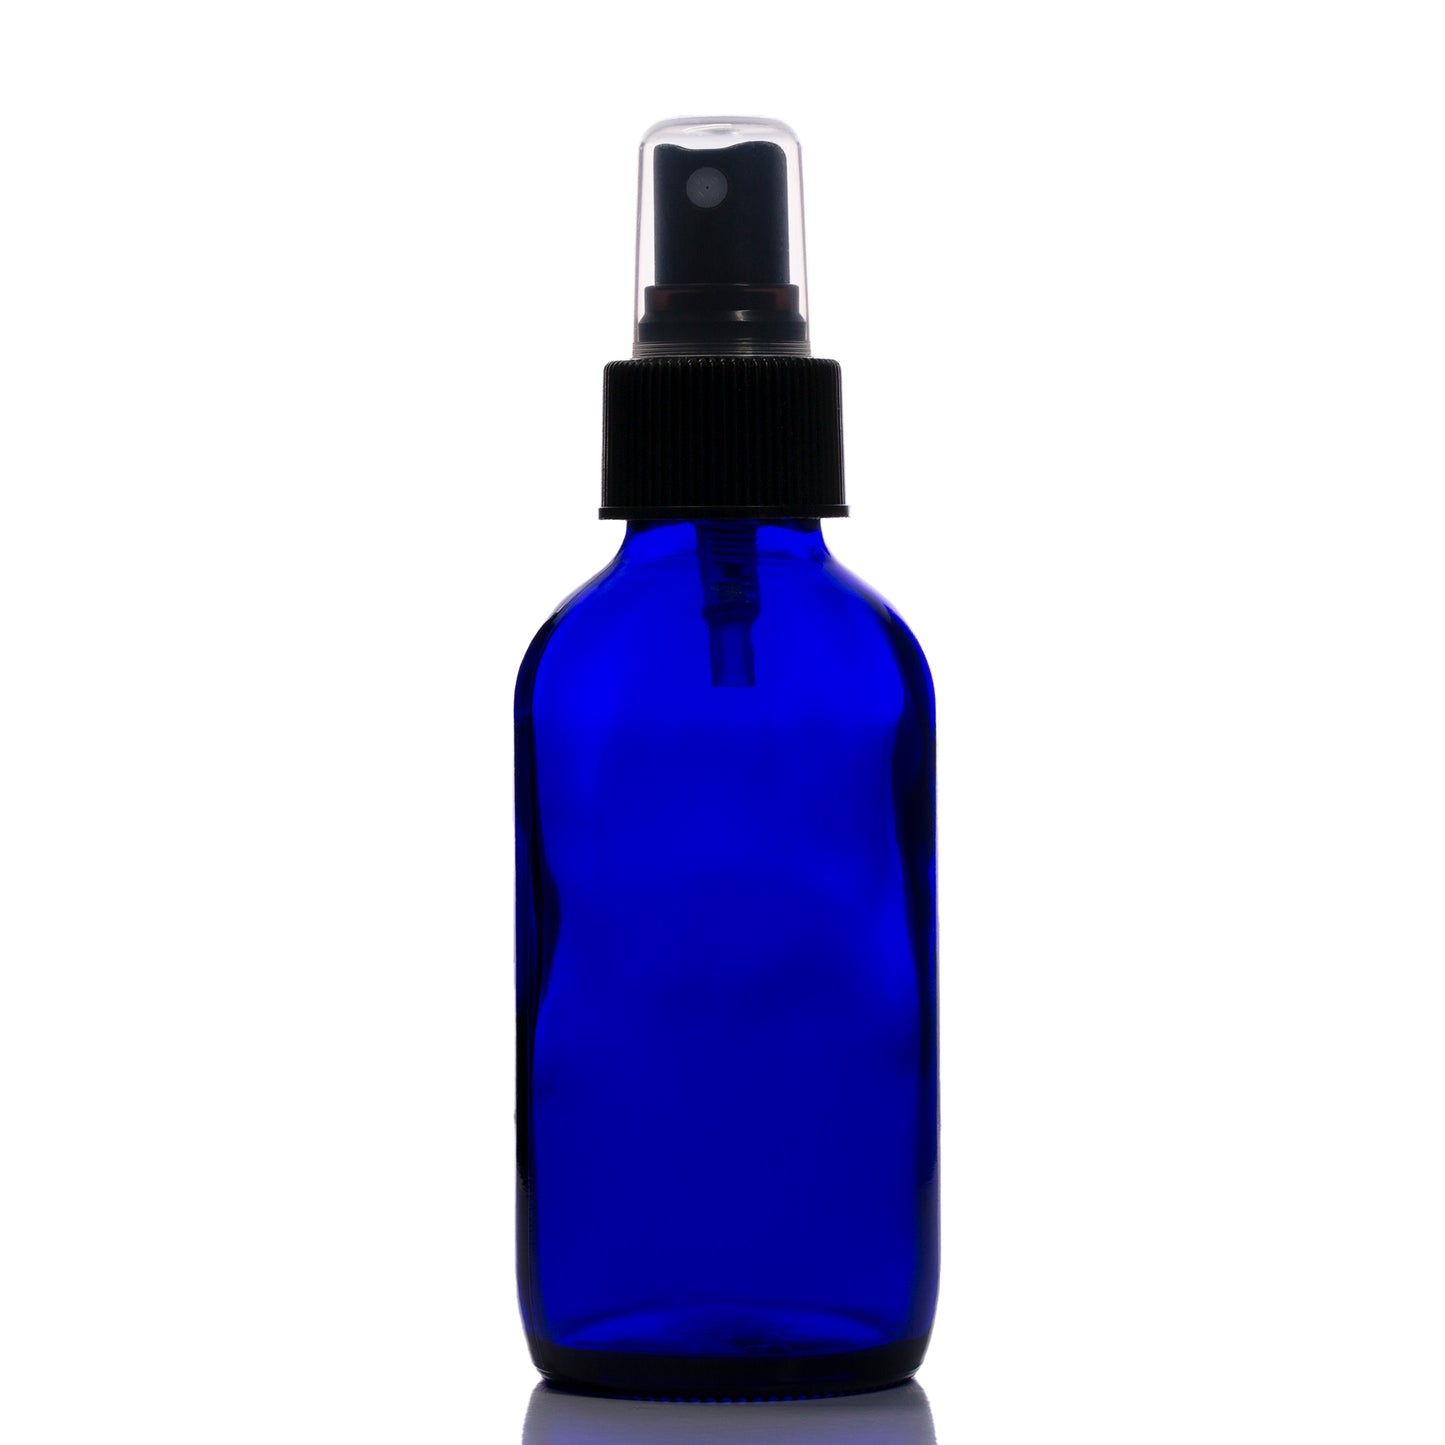 4 oz Blue Glass Boston Round Bottle with 24-410 Black Fine Mist Sprayer